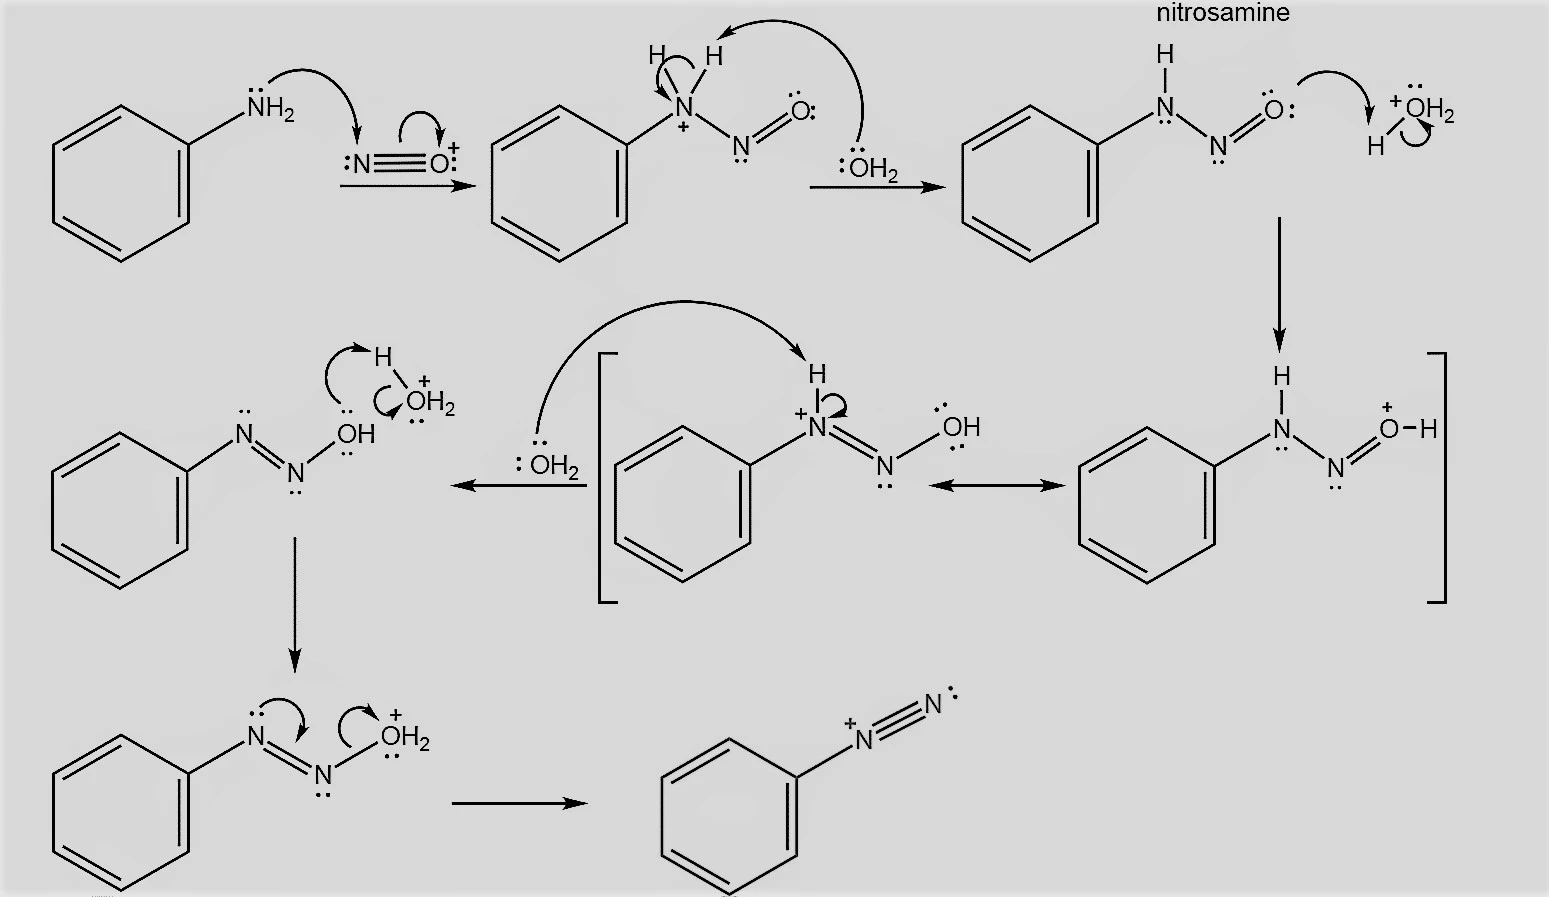 formation of benzenediazonium ion